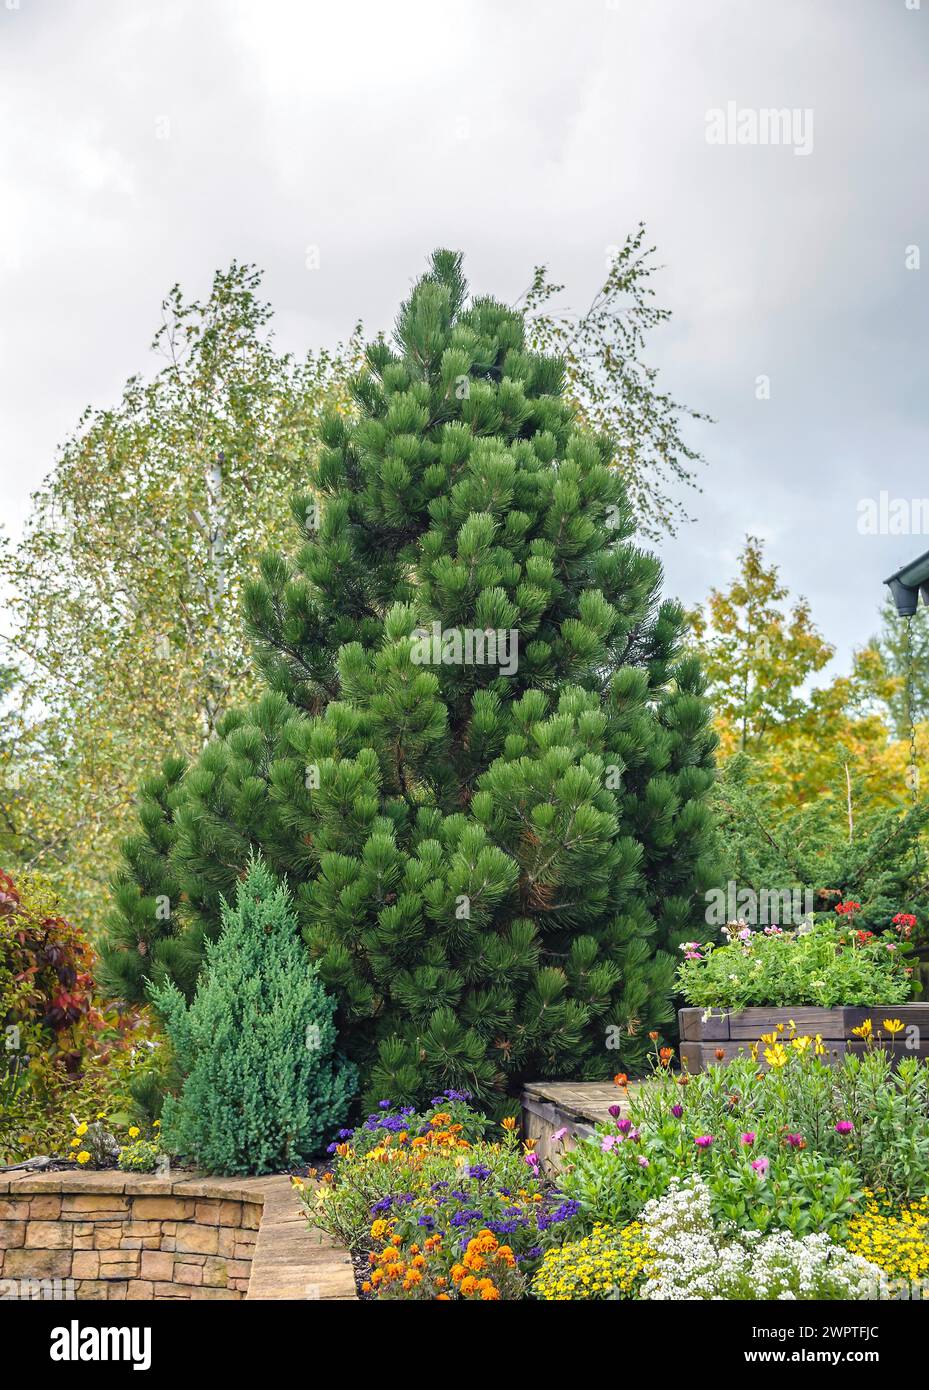 Snakeskin Pine (Pinus heldreichii 'Compact Gem'), Erich Schleich, Neustrelitz, Mecklenburg-Vorpommern, Germany Stock Photo